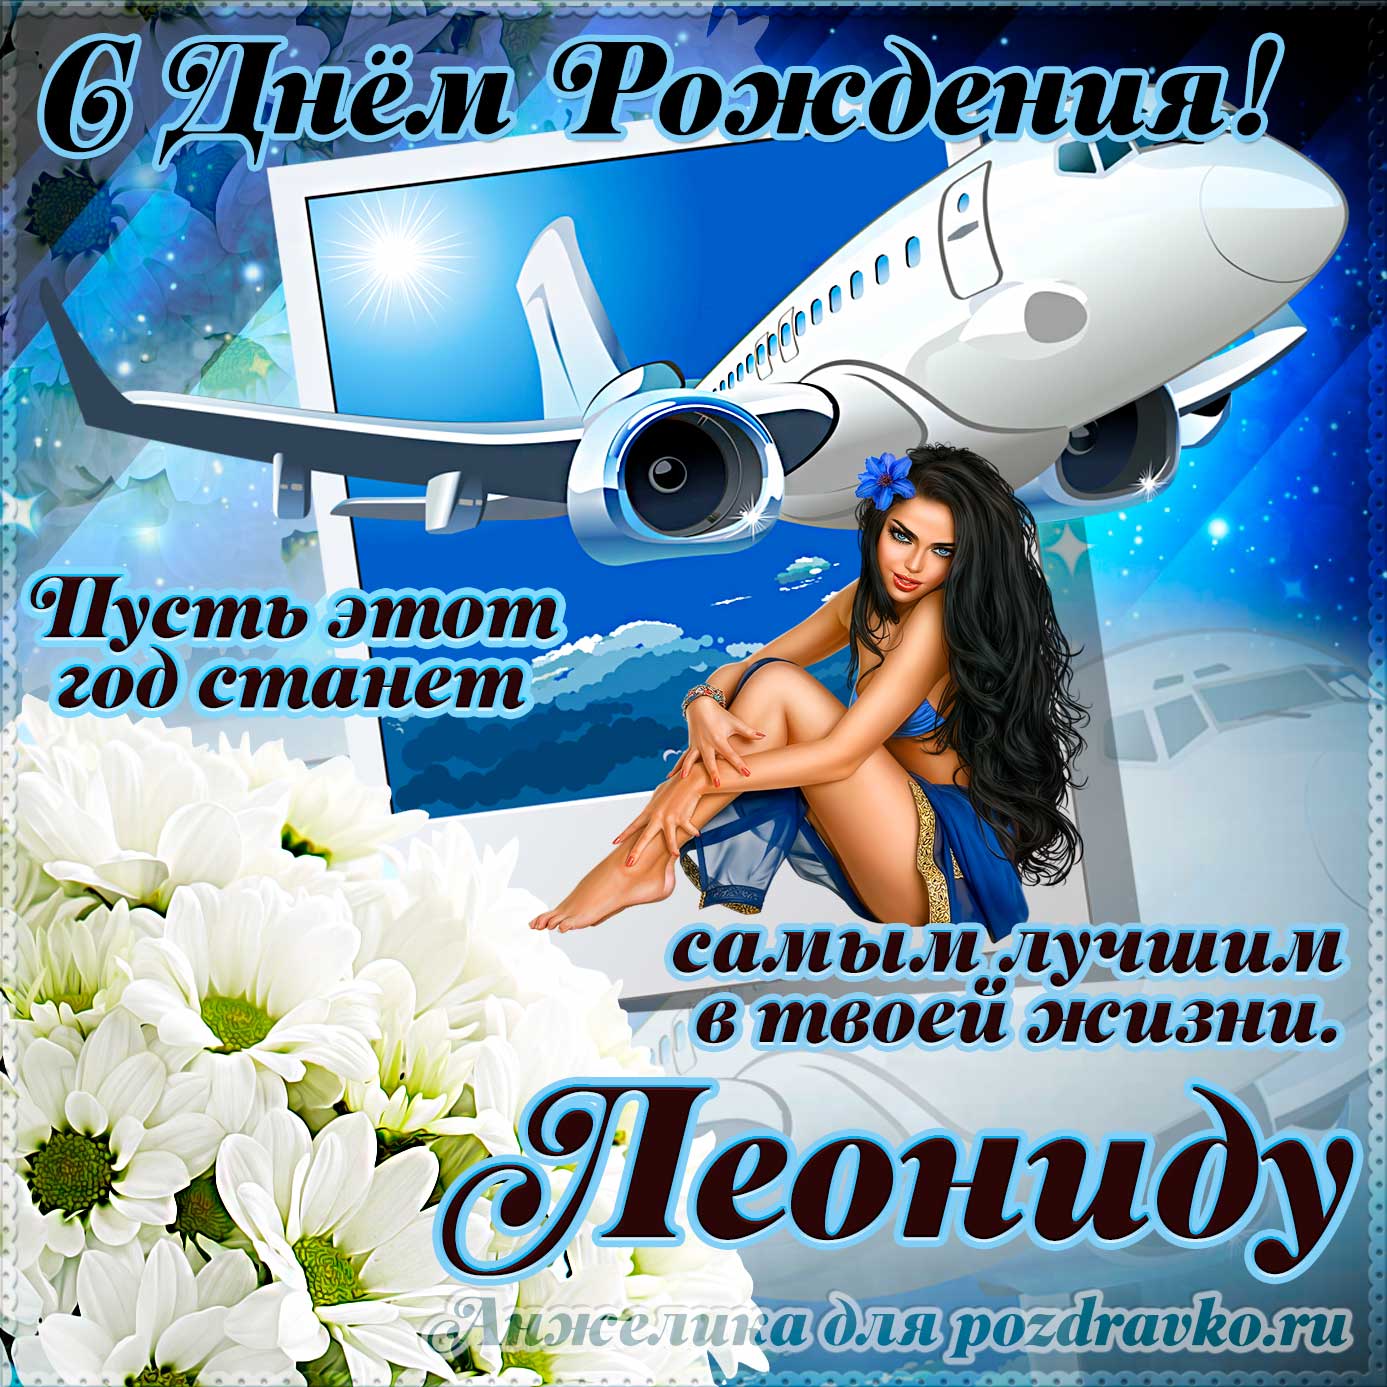 Открытка - Леониду на день рождения с красивым пожеланием самолетом и девушкой. Скачать бесплатно или отправить картинку.